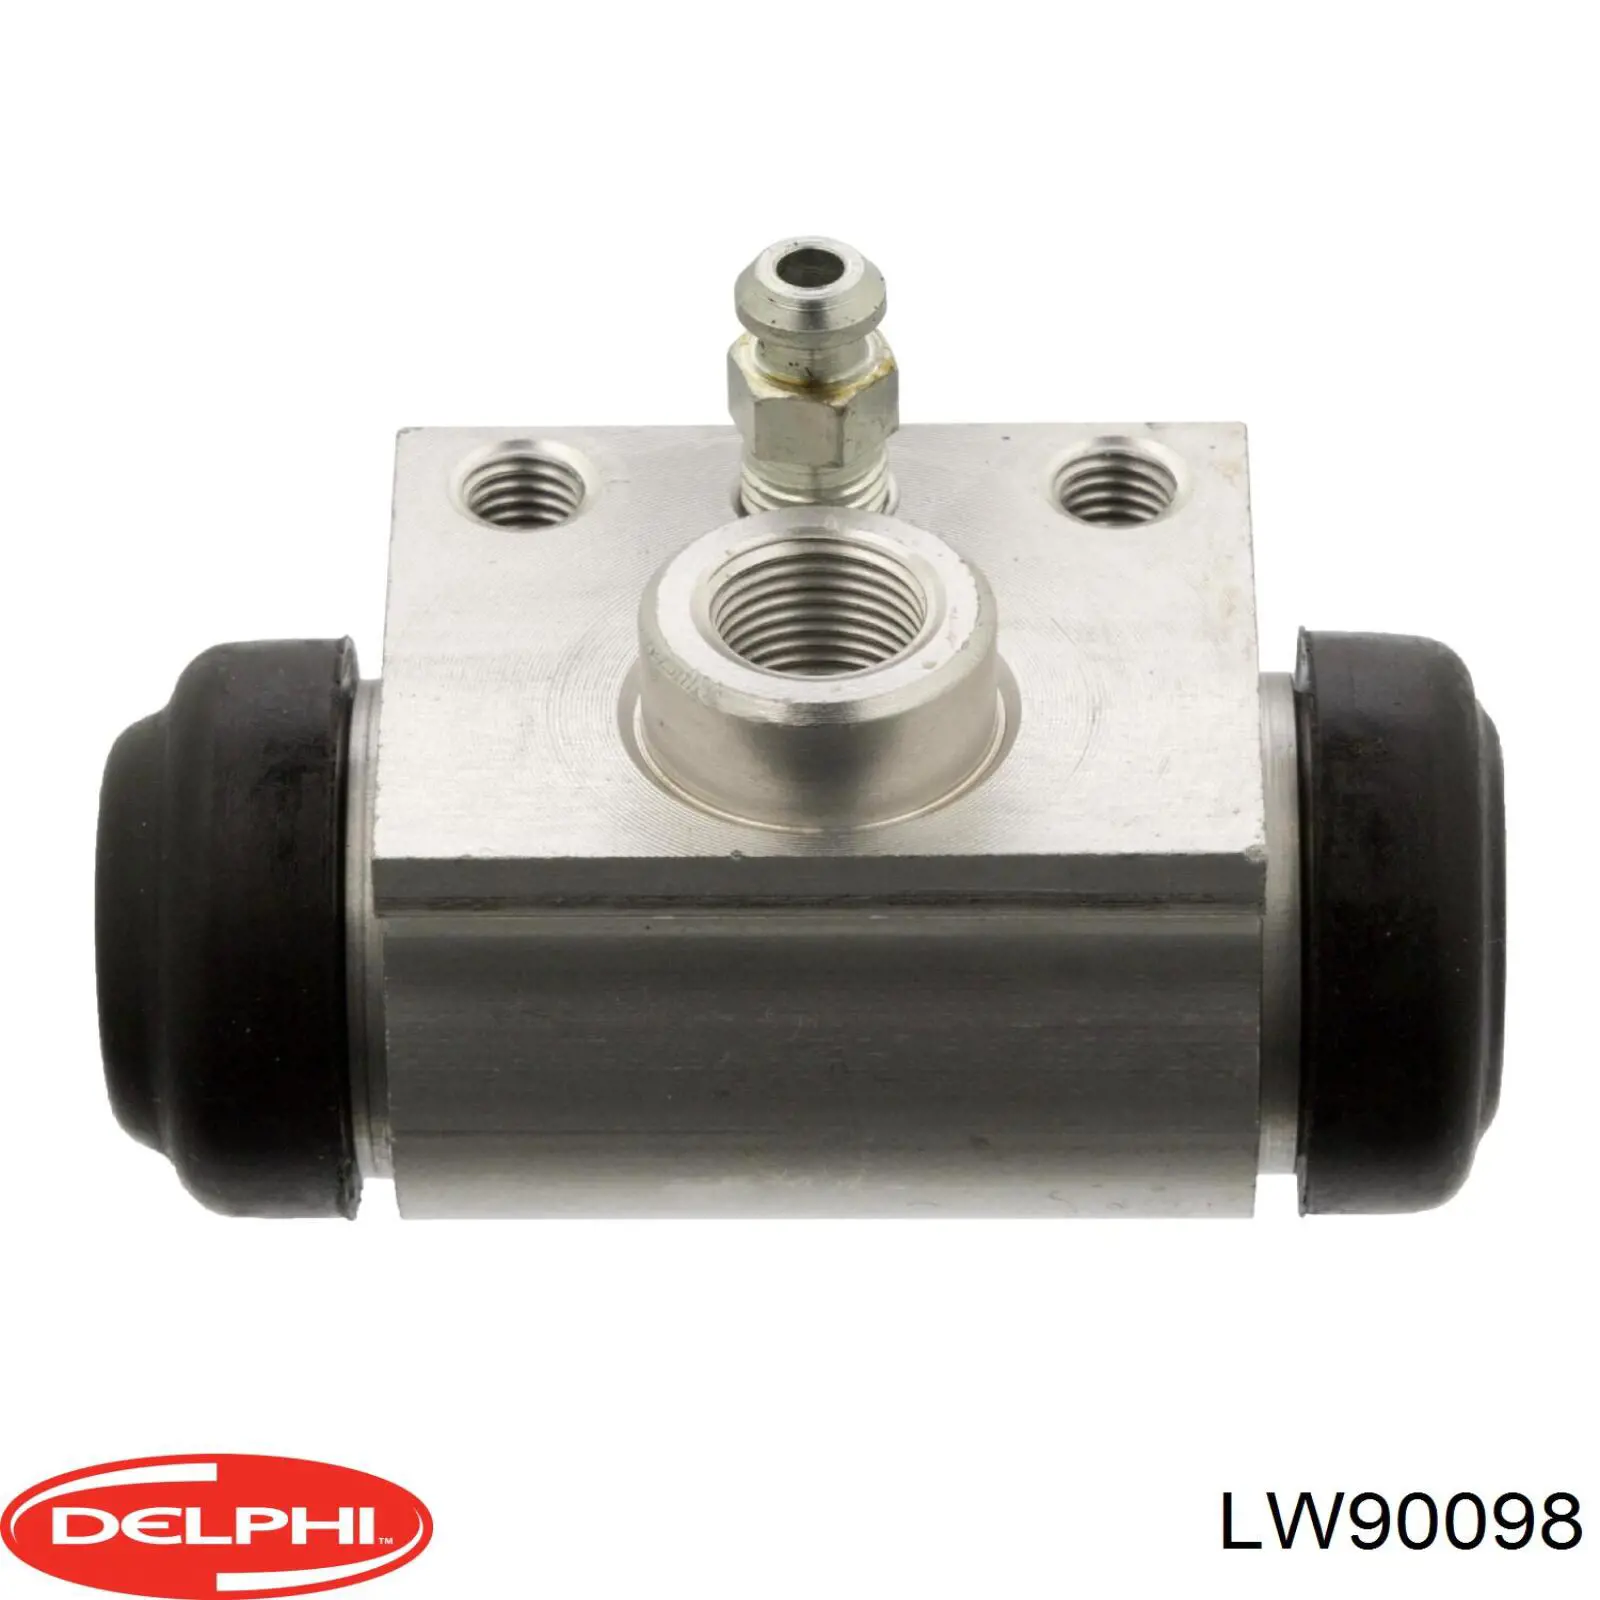 LW90098 Delphi цилиндр тормозной колесный рабочий задний